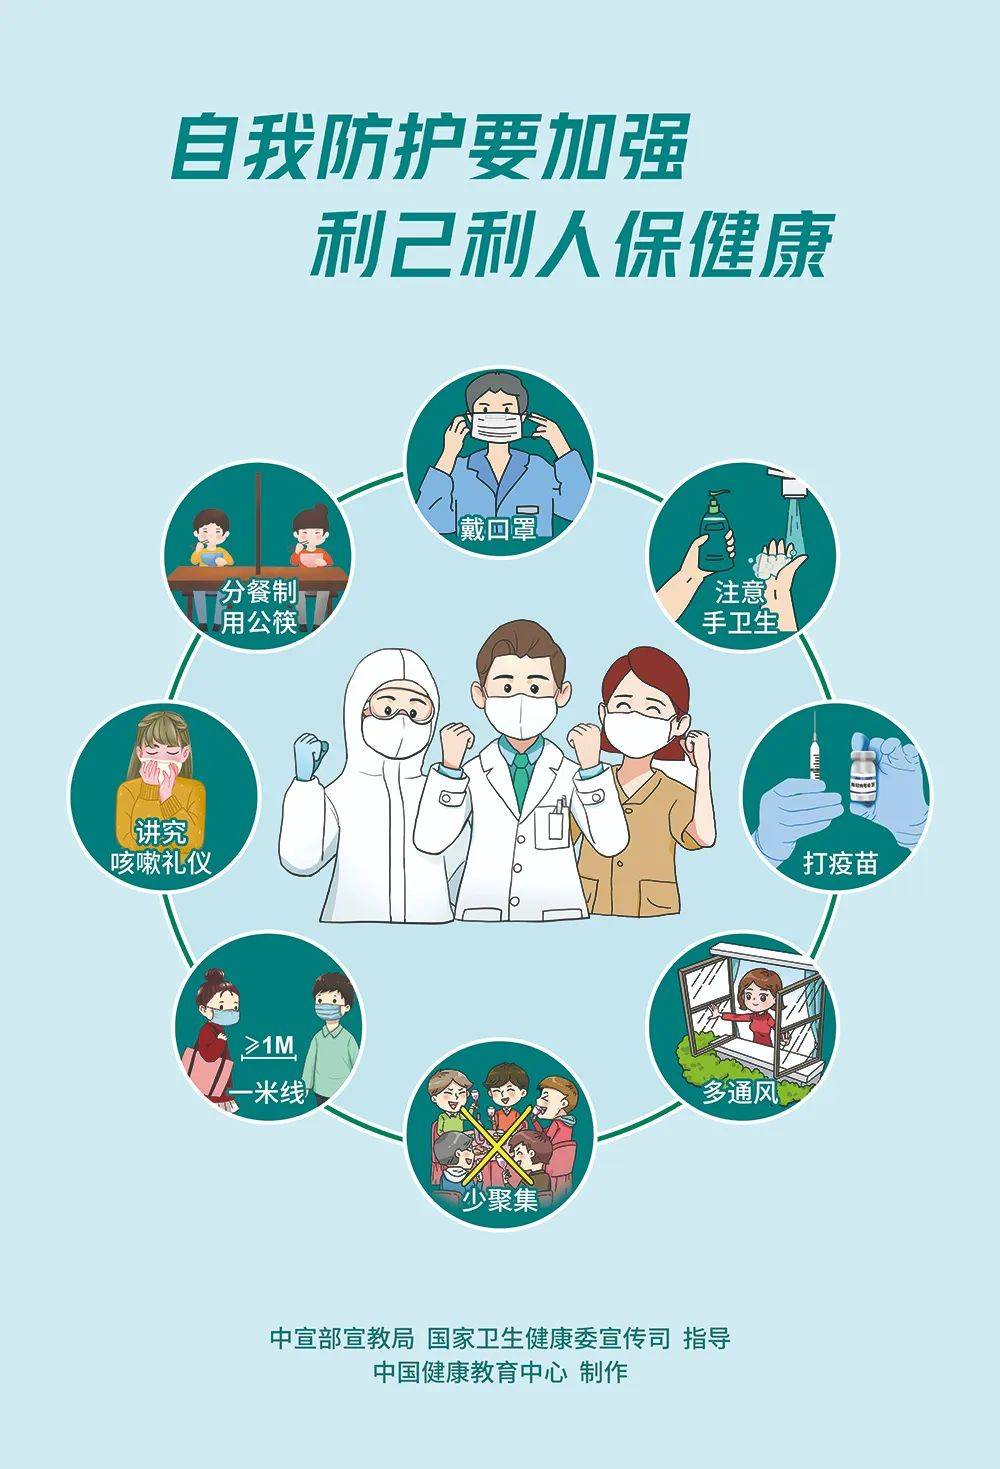 海报|新冠肺炎疫情防控和疫苗接种宣传海报发布